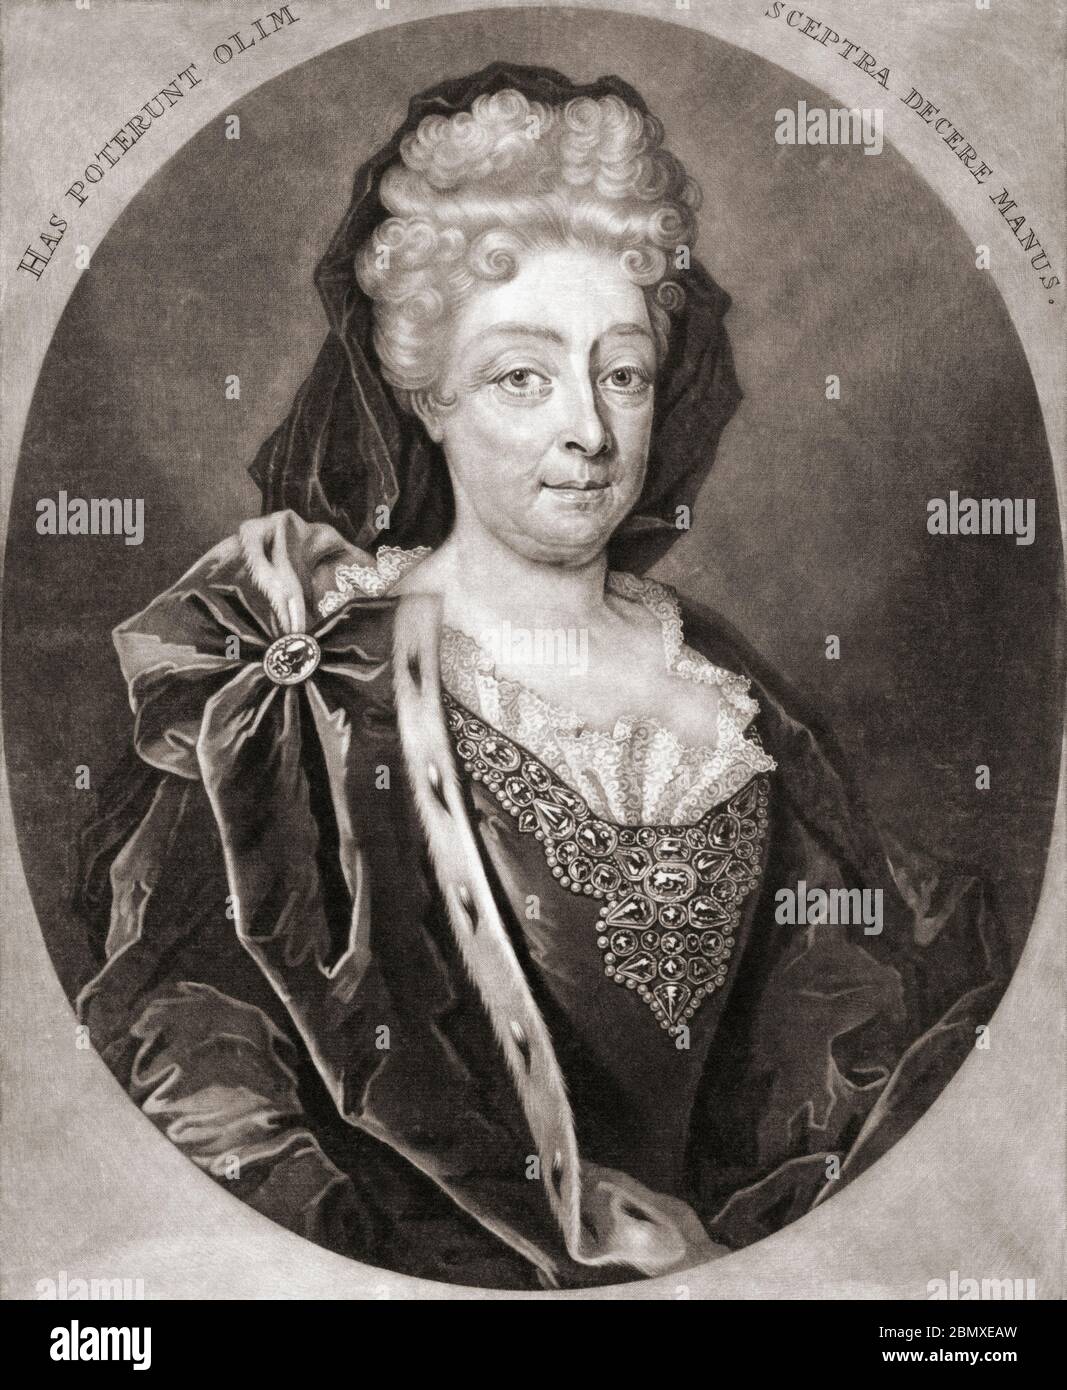 Retrato de Sofía de Hanover, Duquesa de Brunswick-Luneburg, 1630 - 1714. Era heredera de los tronos de Inglaterra e Irlanda en virtud del Acta de arreglo de 1701. De un grabado de Pieter Schenk (I). Foto de stock